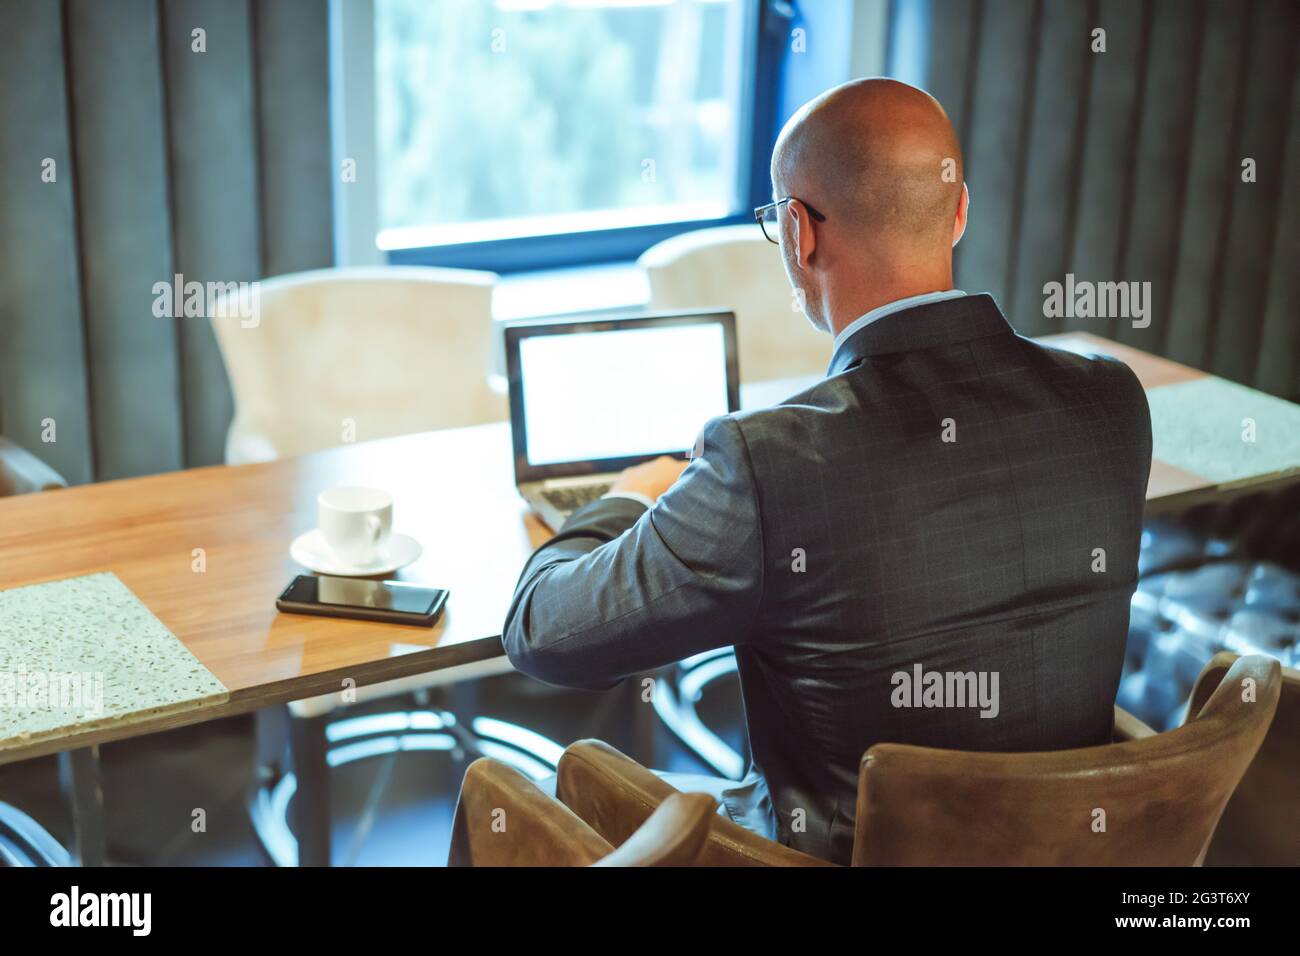 Hombre de negocios que utiliza tecnología inalámbrica digital. Vista posterior del hombre caucásico que trabaja con un ordenador portátil en el lugar de trabajo A. Foto de stock